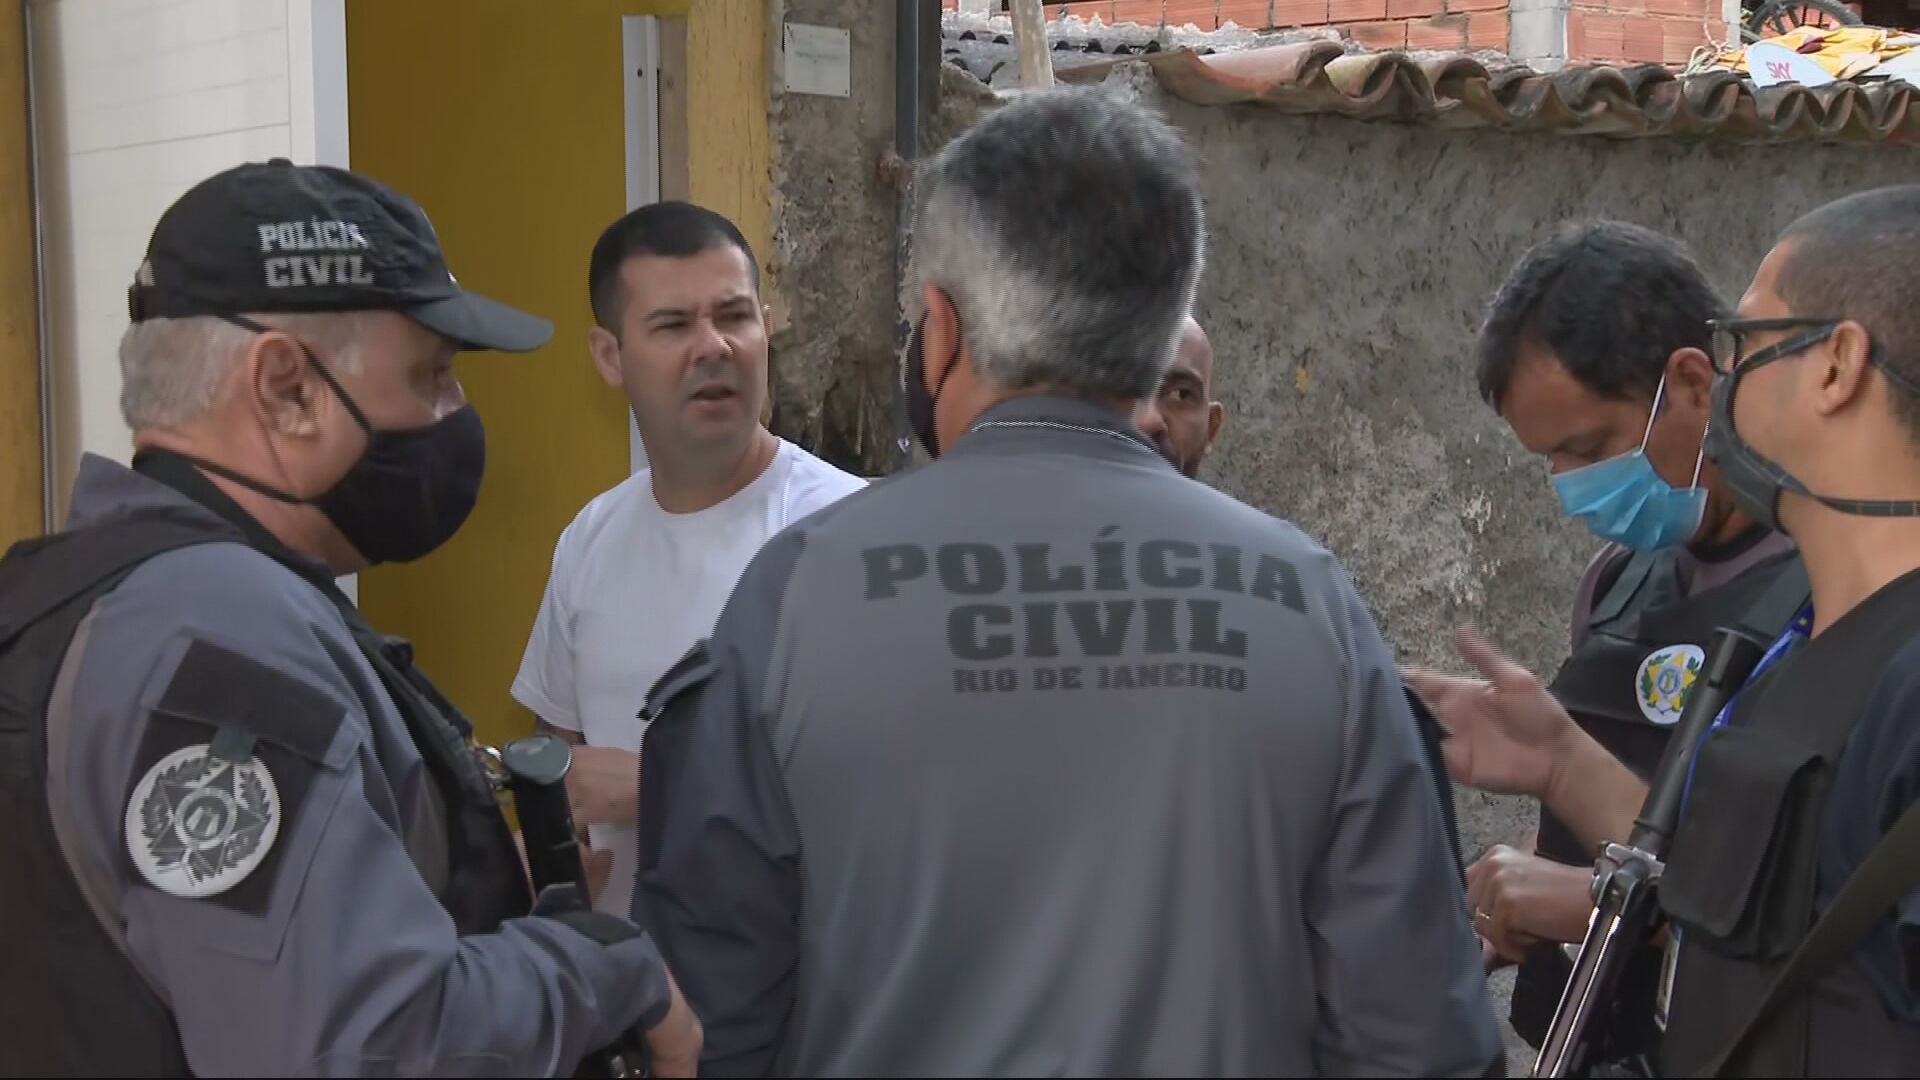  Polícia Civil faz sobre operação contra milícias no Rio de Janeiro